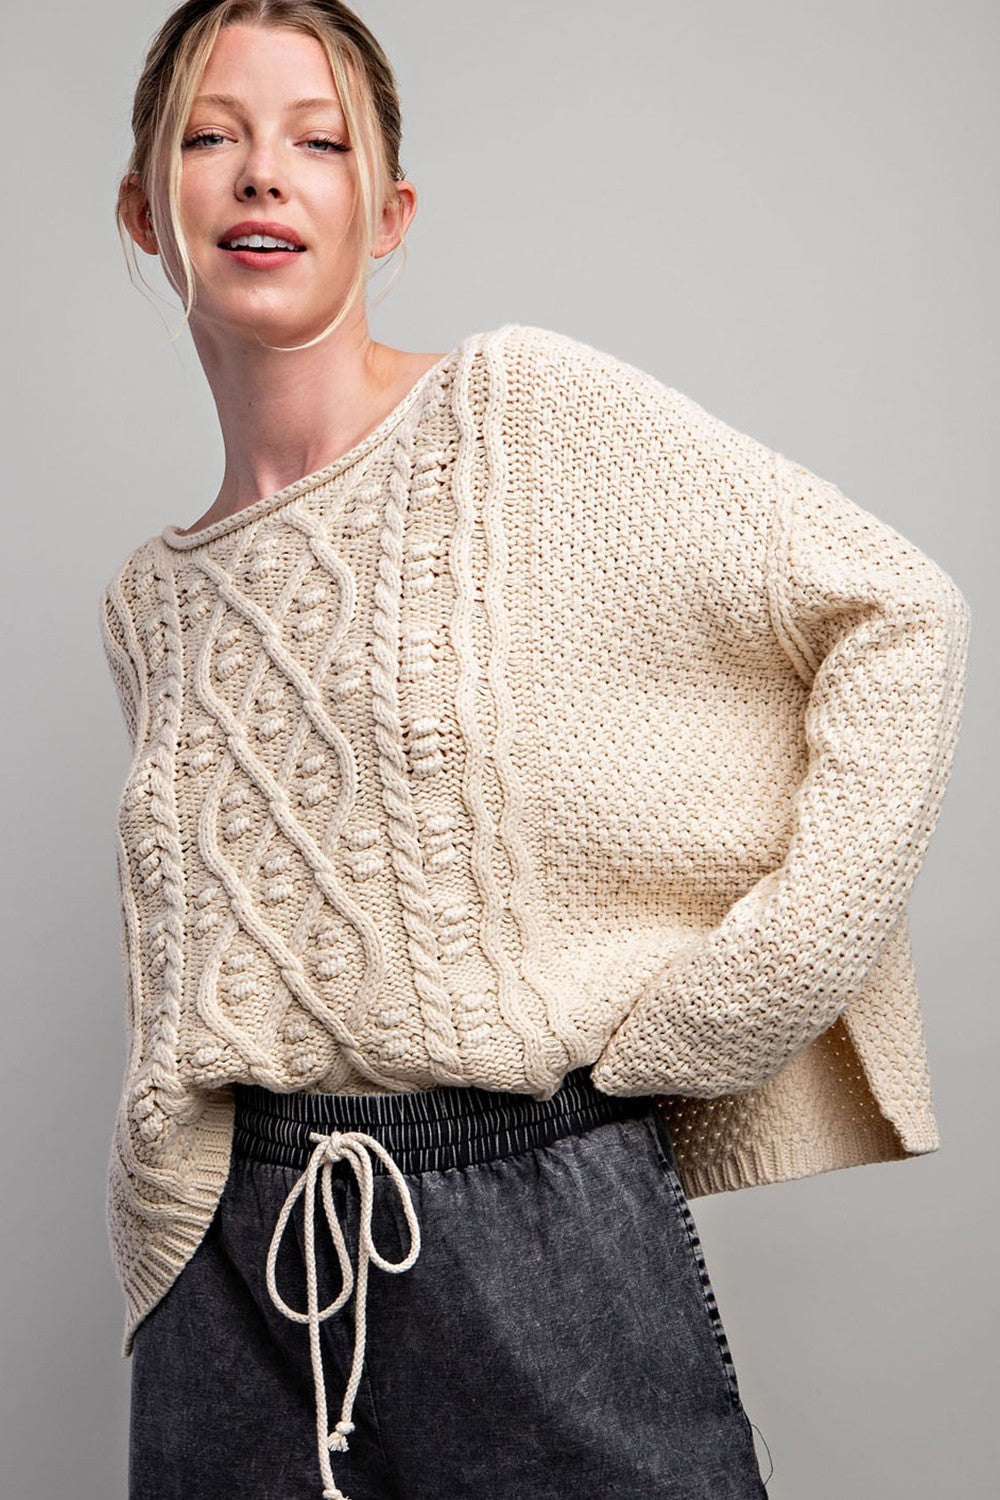 Rachel Knit Sweater